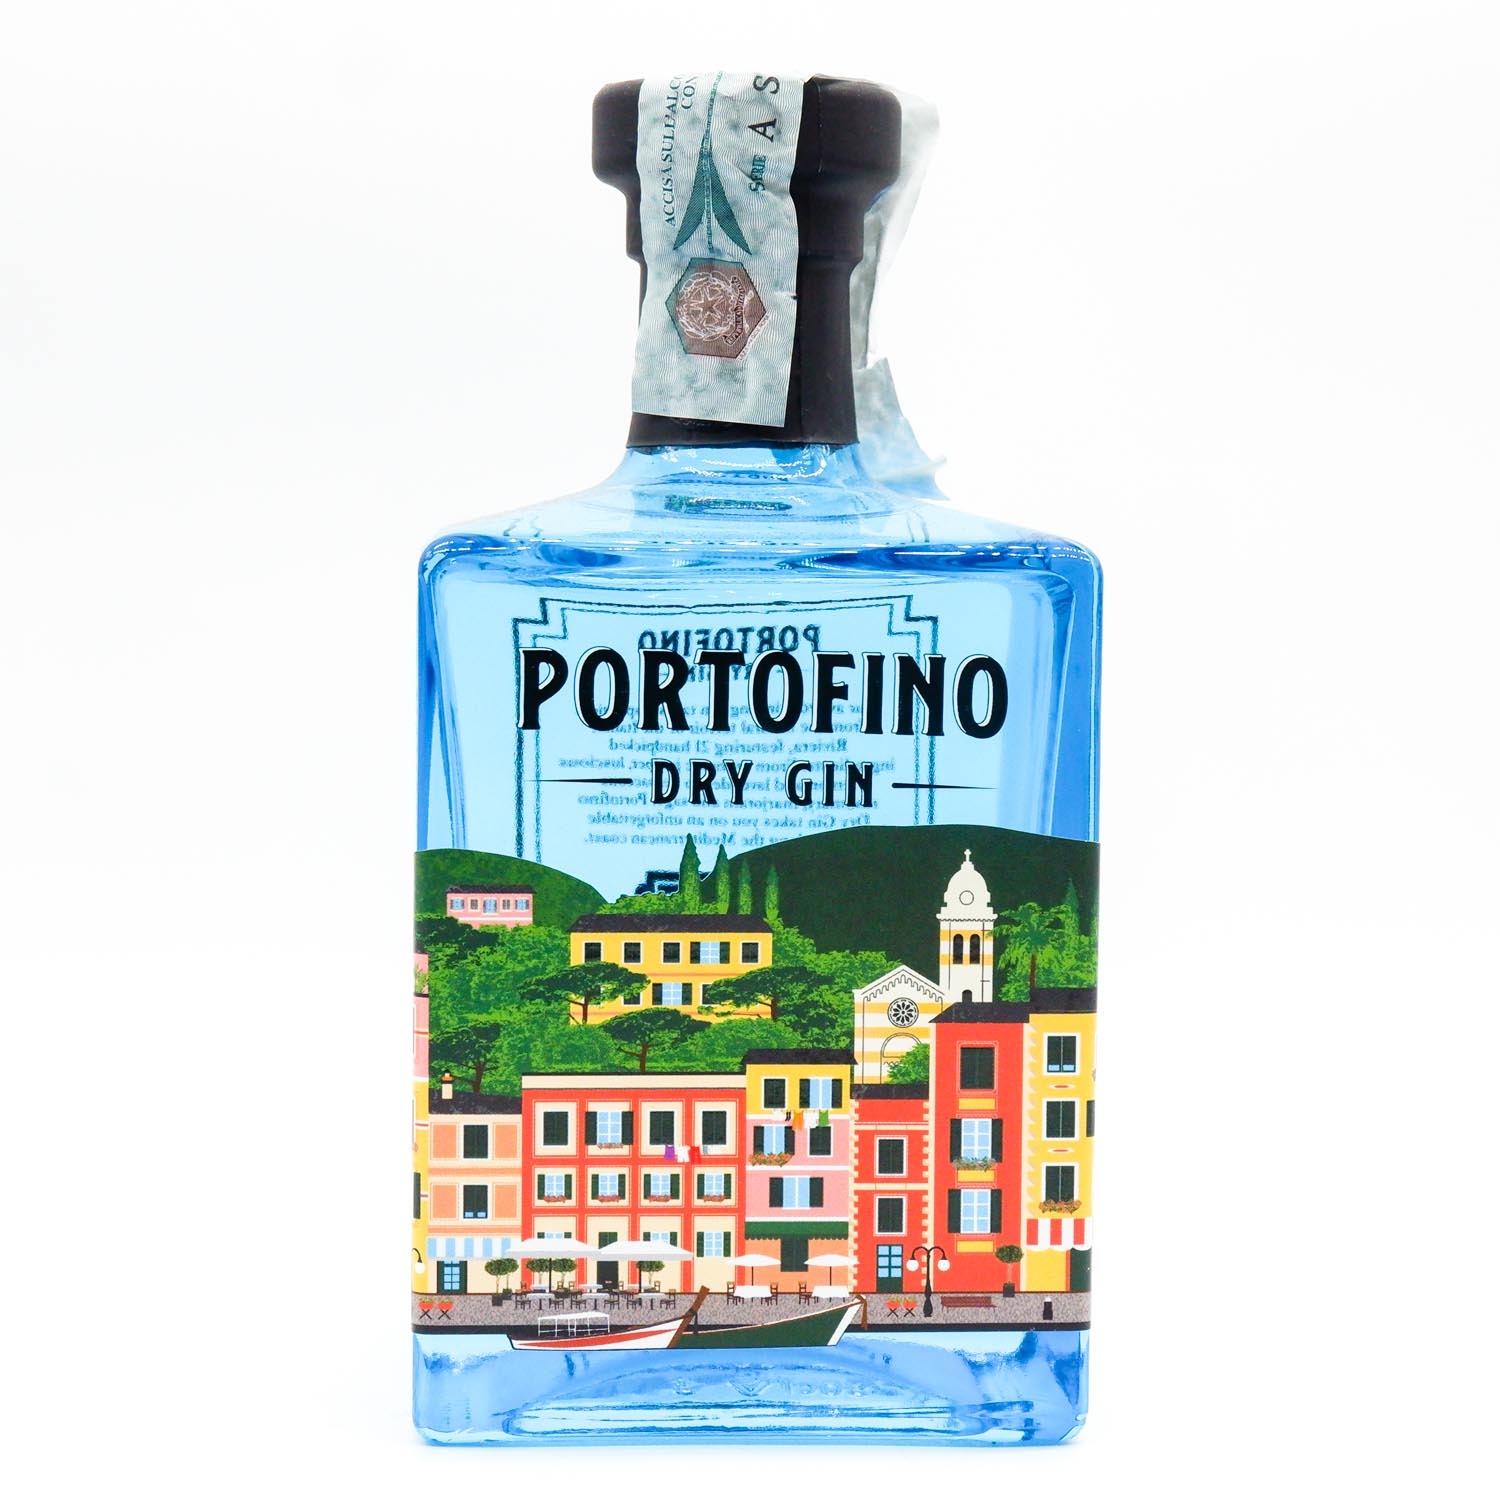 Portofino dry gin 50cl - Antica Drogheria Manganelli 1879